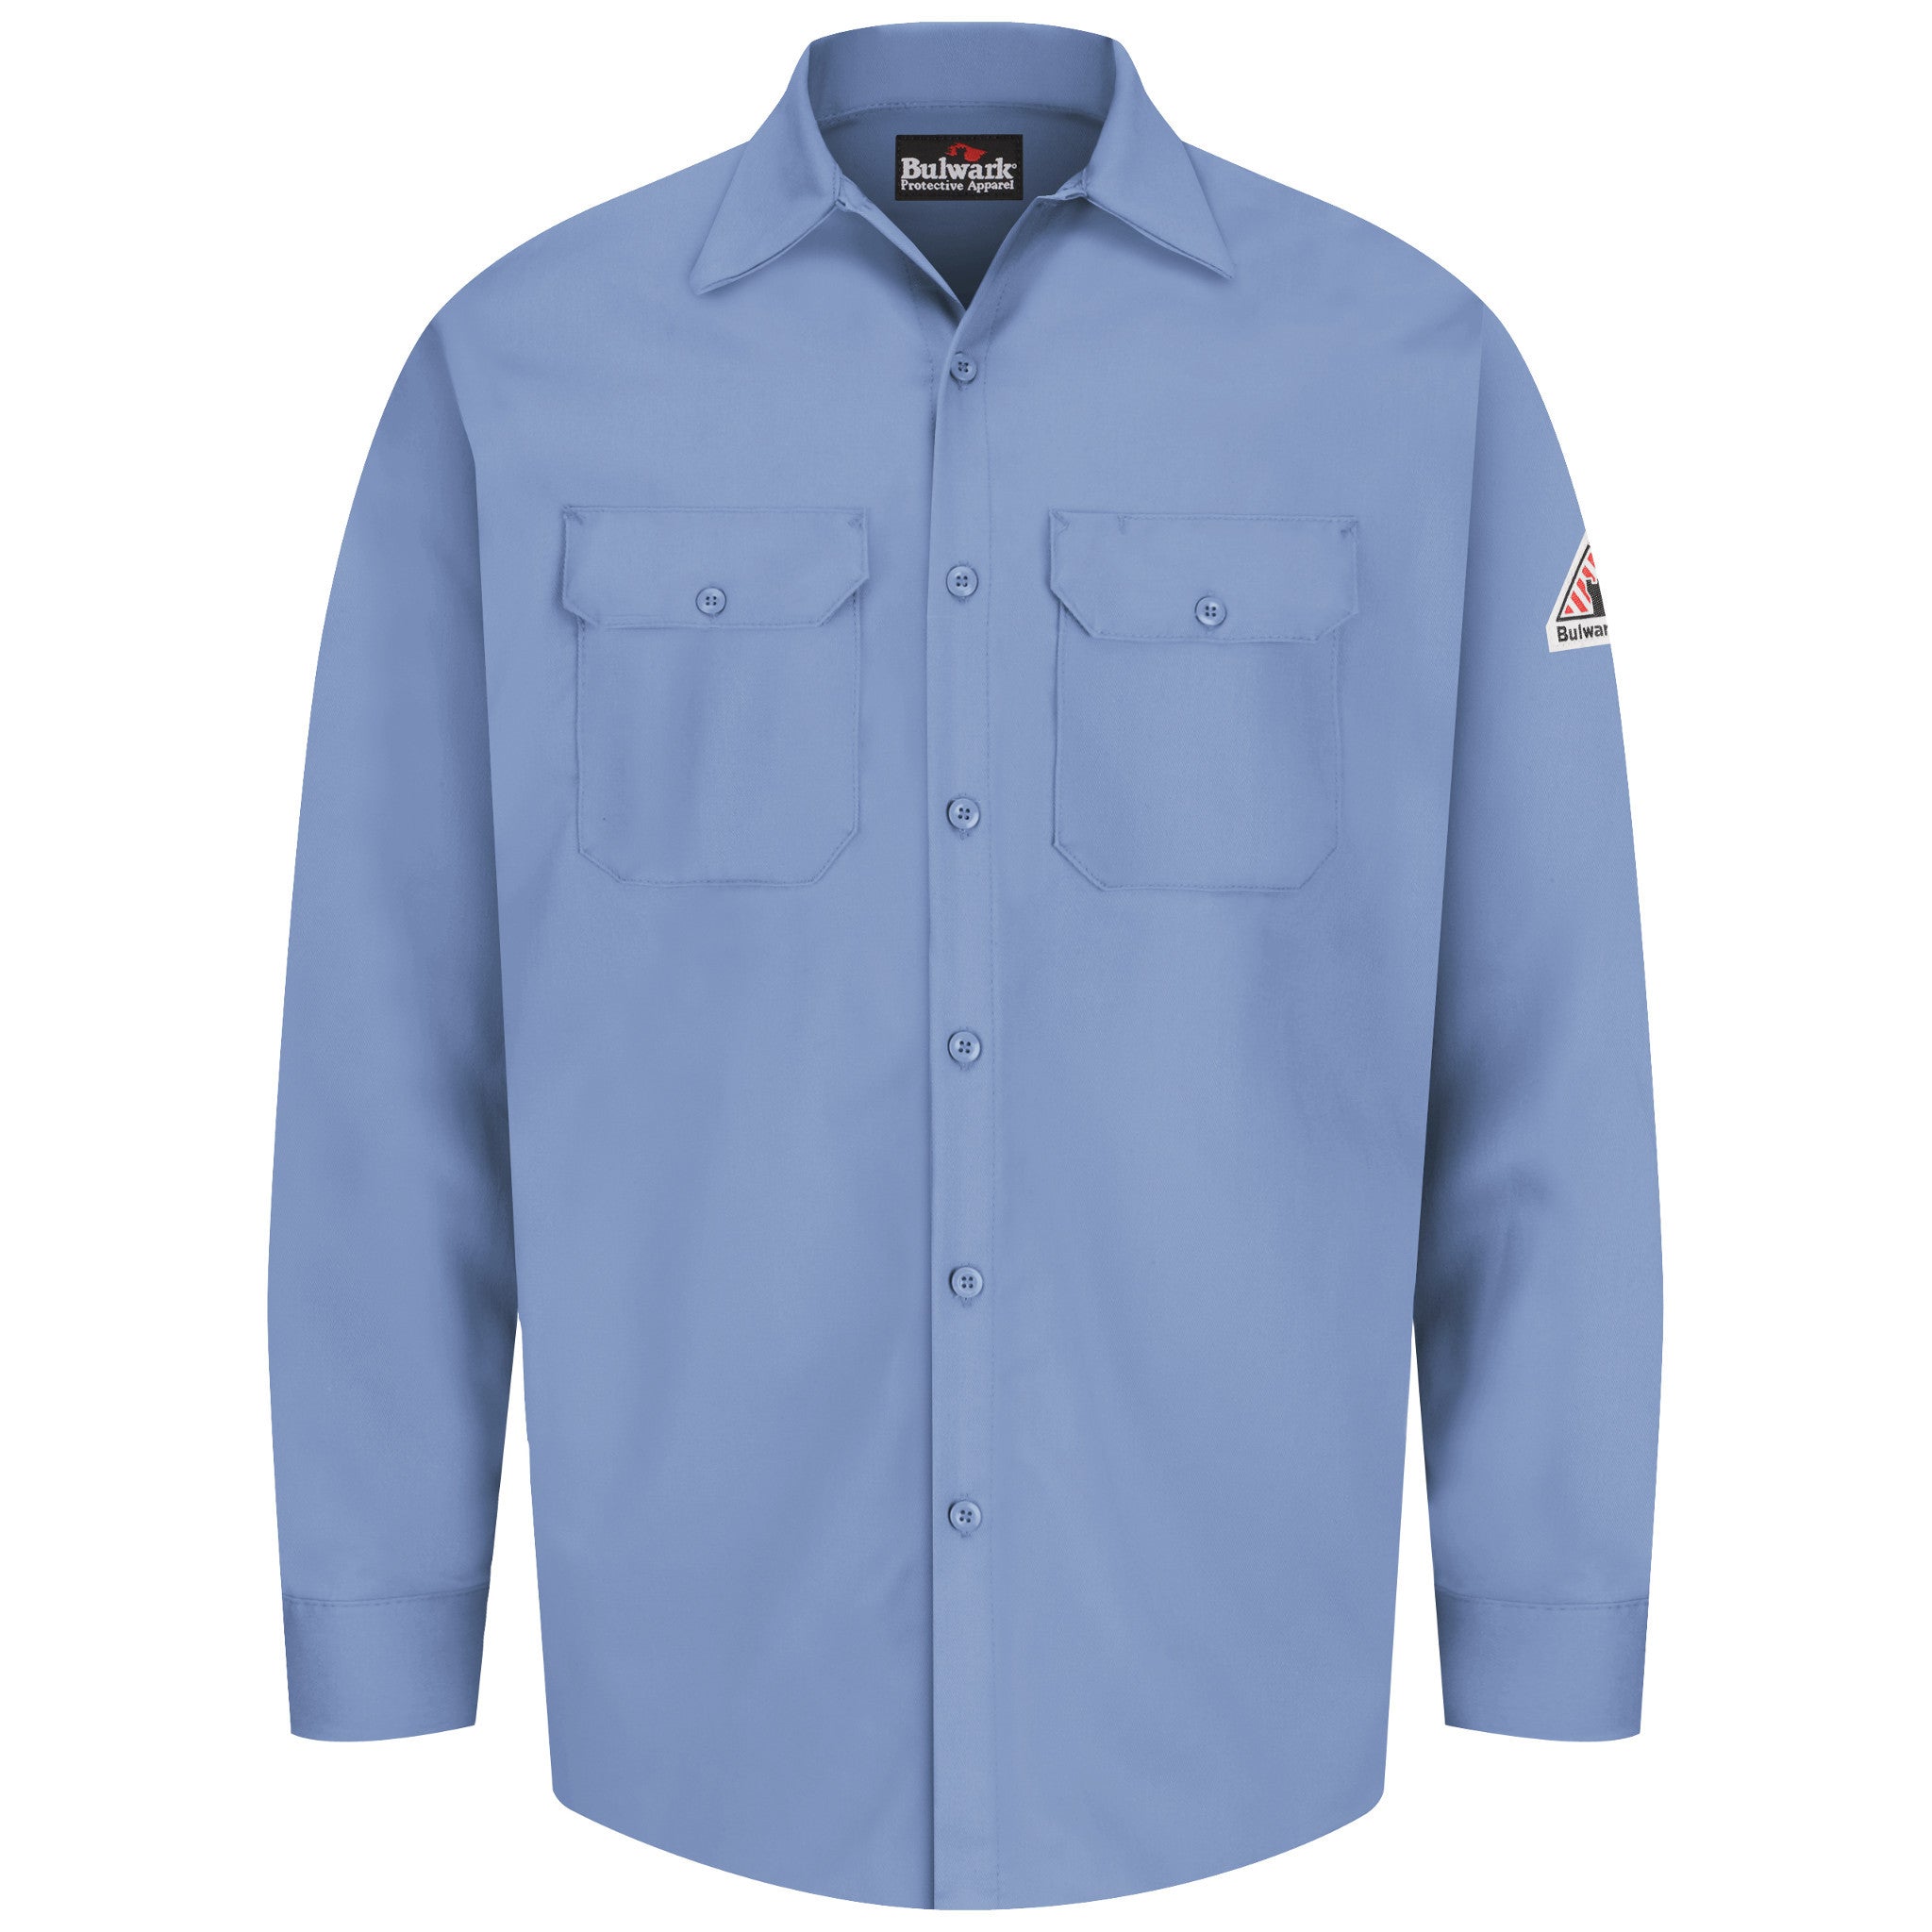 Bulwark Button-Front Work Shirt - Cat 1 - (SEW2)